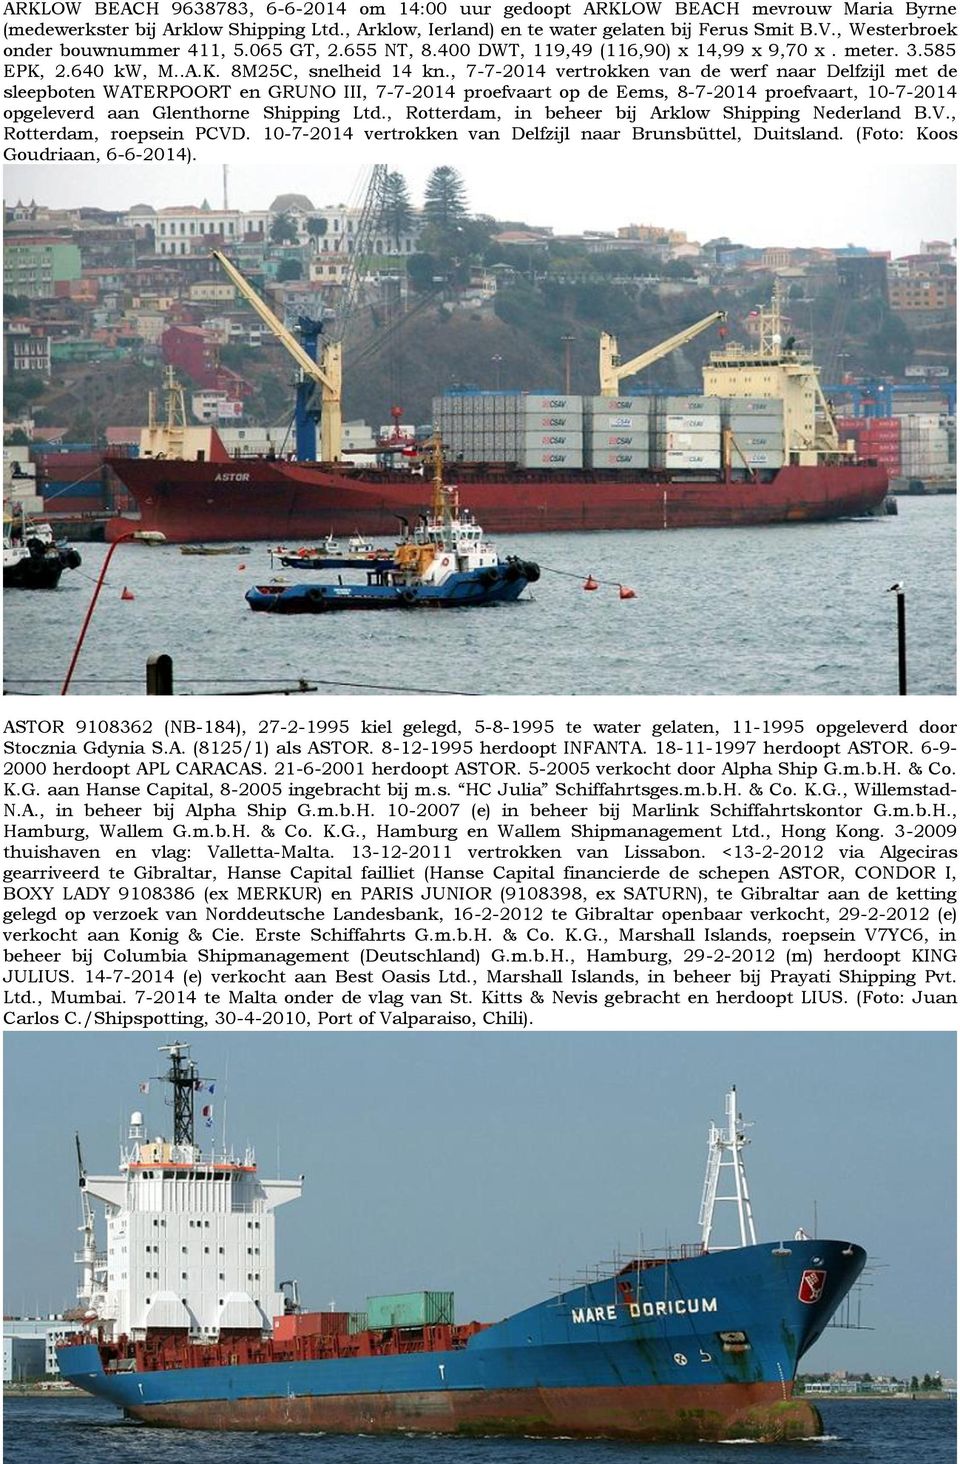 , 7-7-2014 vertrokken van de werf naar Delfzijl met de sleepboten WATERPOORT en GRUNO III, 7-7-2014 proefvaart op de Eems, 8-7-2014 proefvaart, 10-7-2014 opgeleverd aan Glenthorne Shipping Ltd.